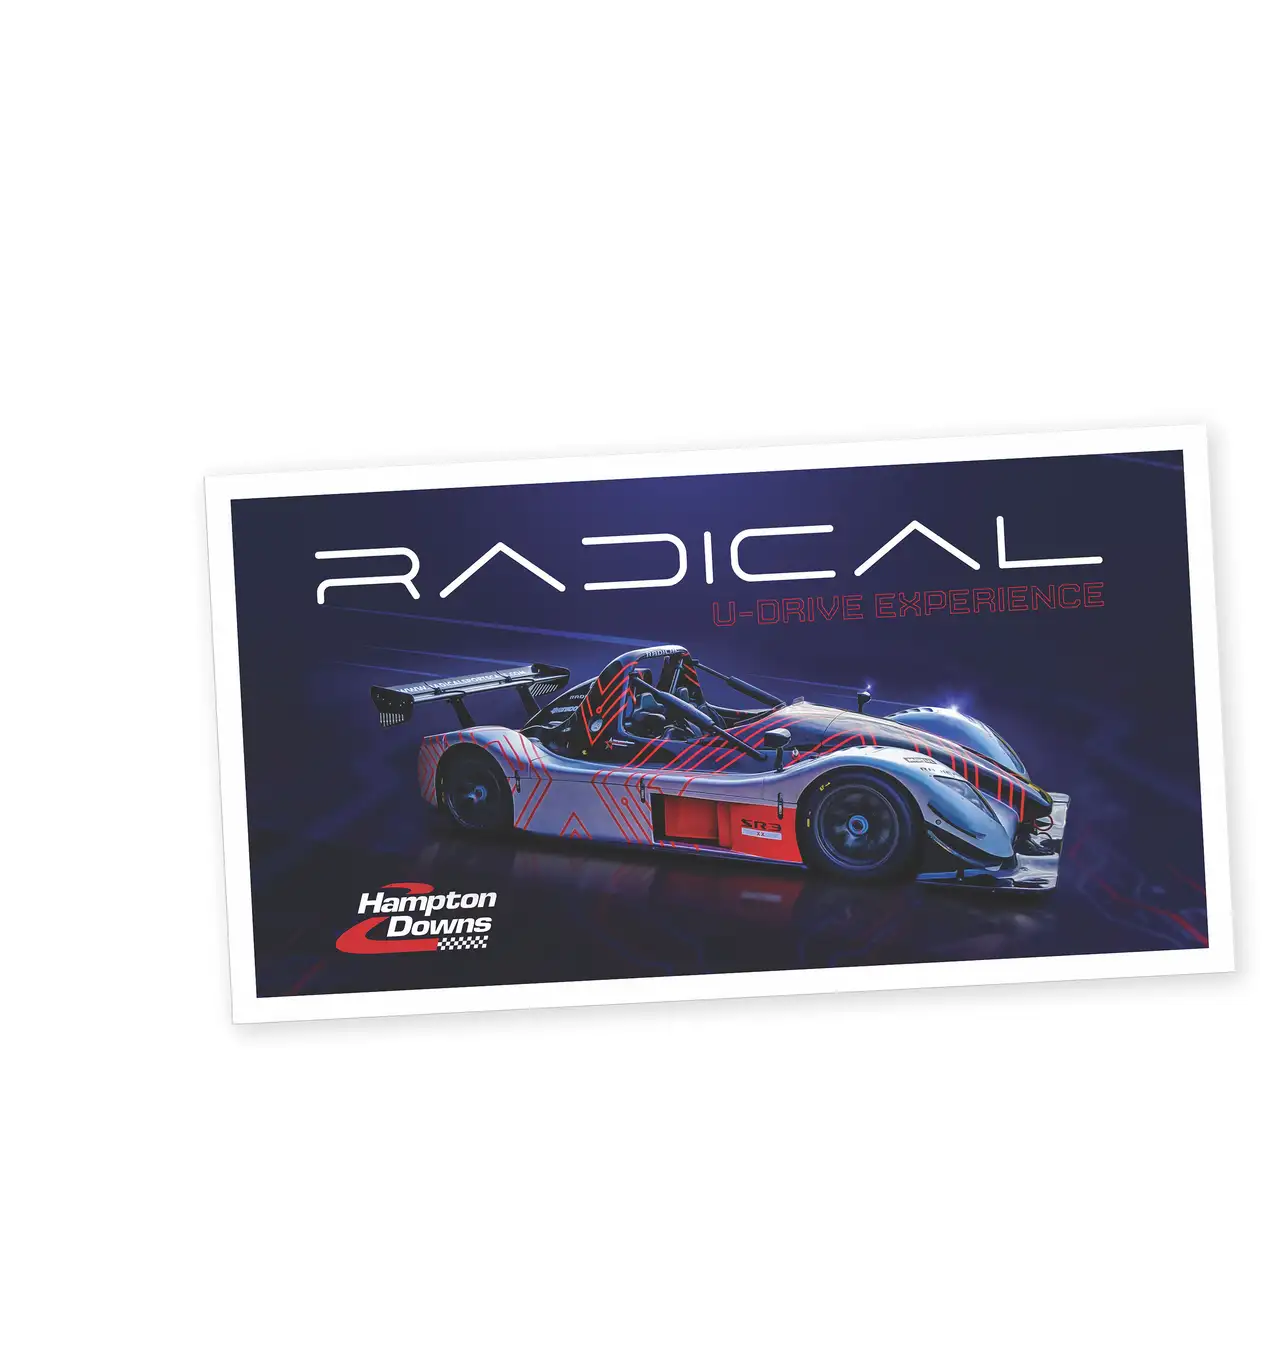 Radical-u-drive competition